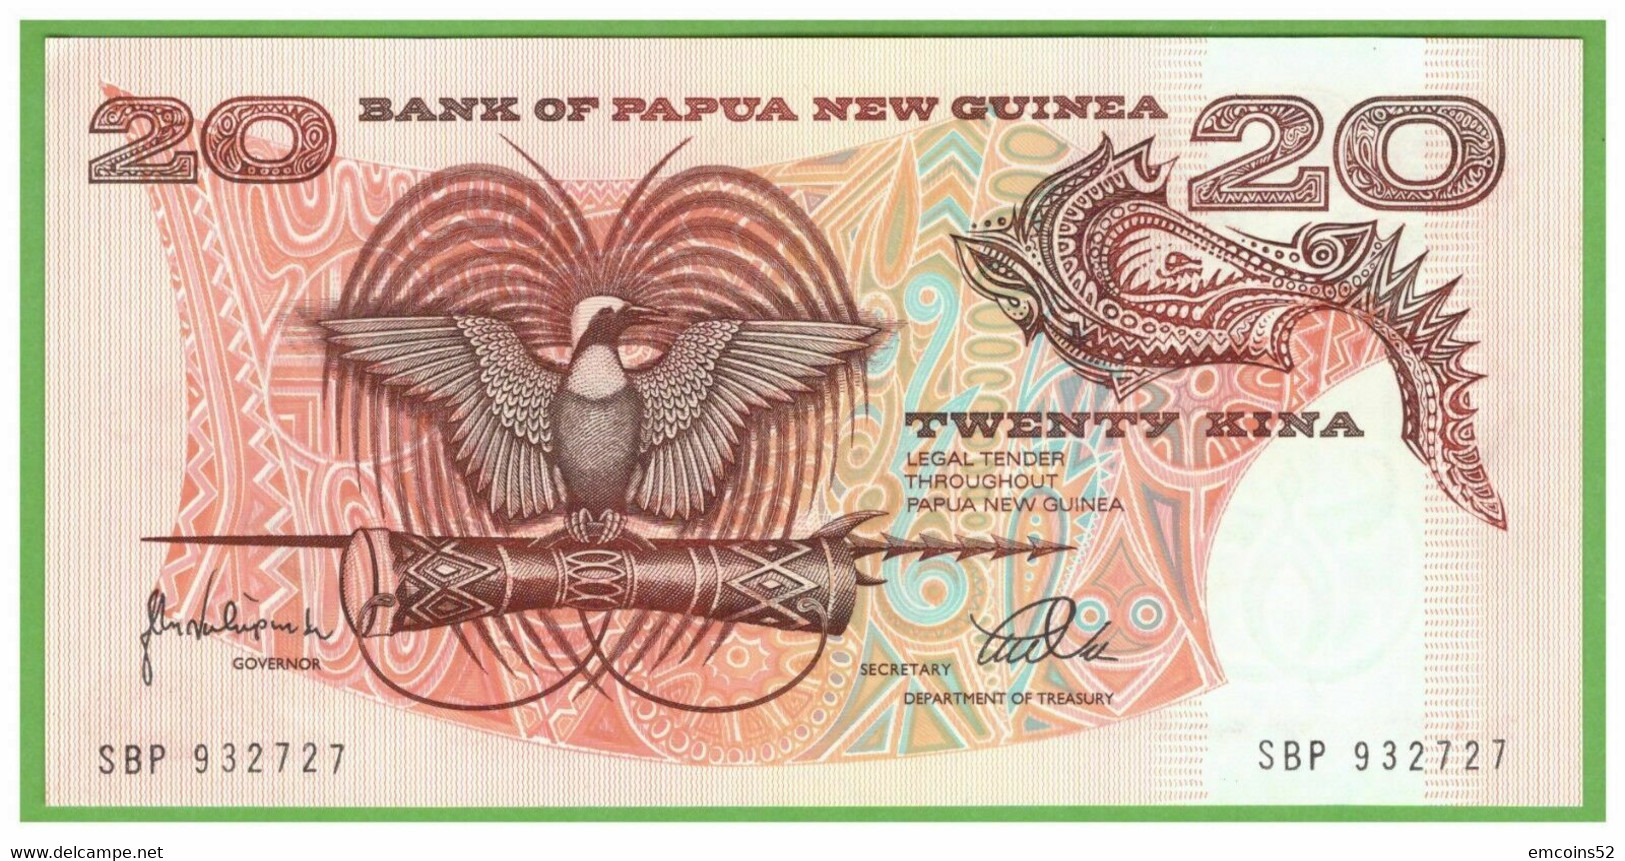 PAPUA NEW GUINEA 20 DOLLARS 1998  P-10c  UNC - Papua-Neuguinea